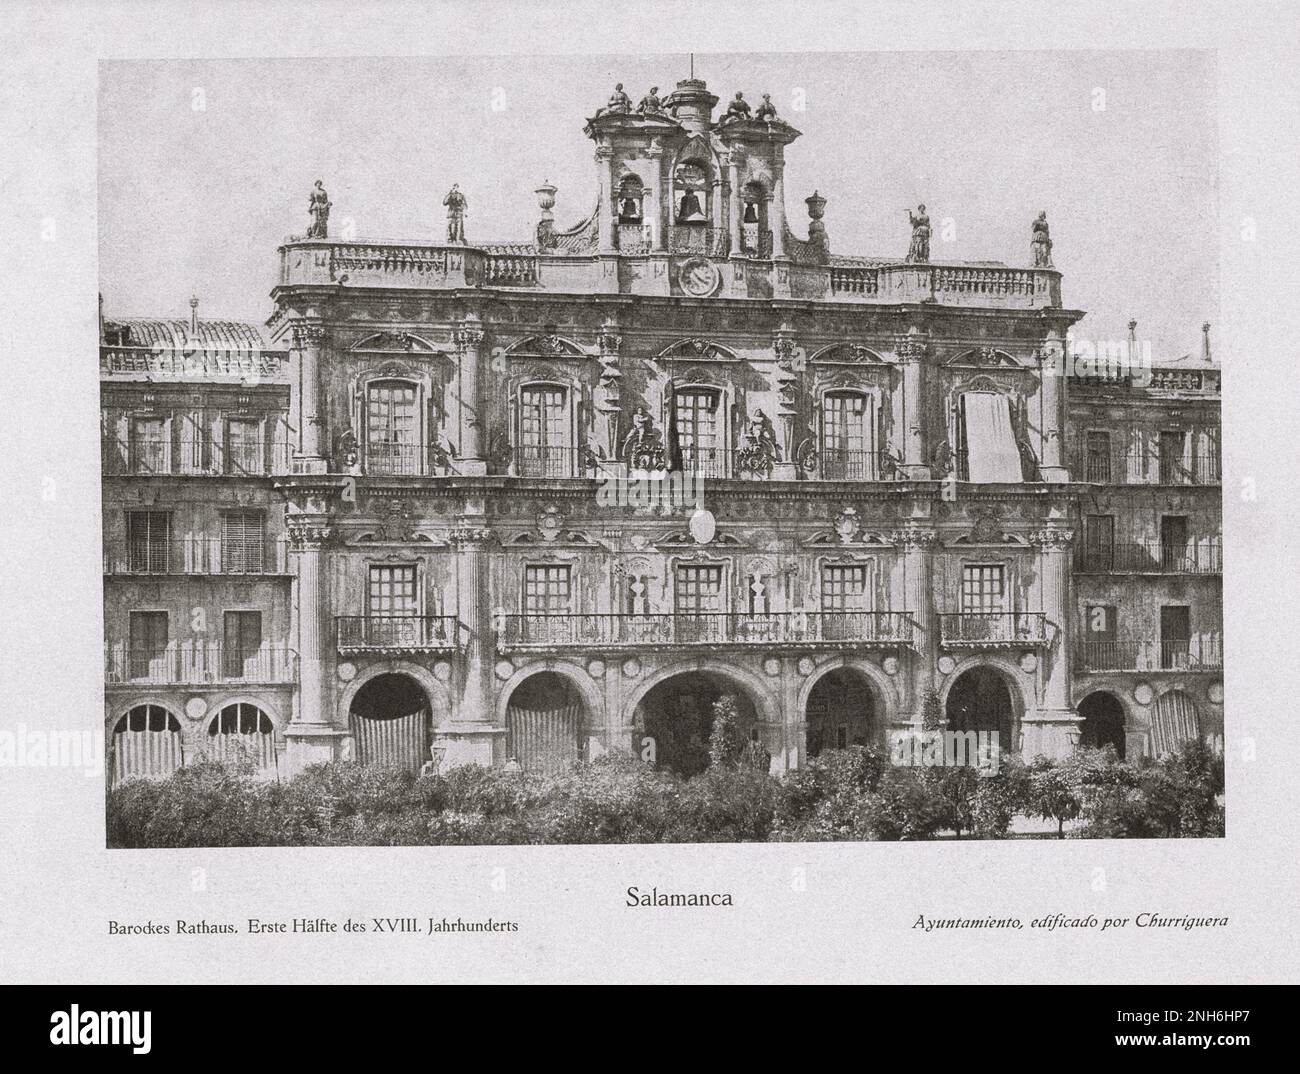 Architecture de la vieille Espagne. Photo d'époque de l'hôtel de ville baroque de Salamanque. Première moitié du XVIII siècle Banque D'Images